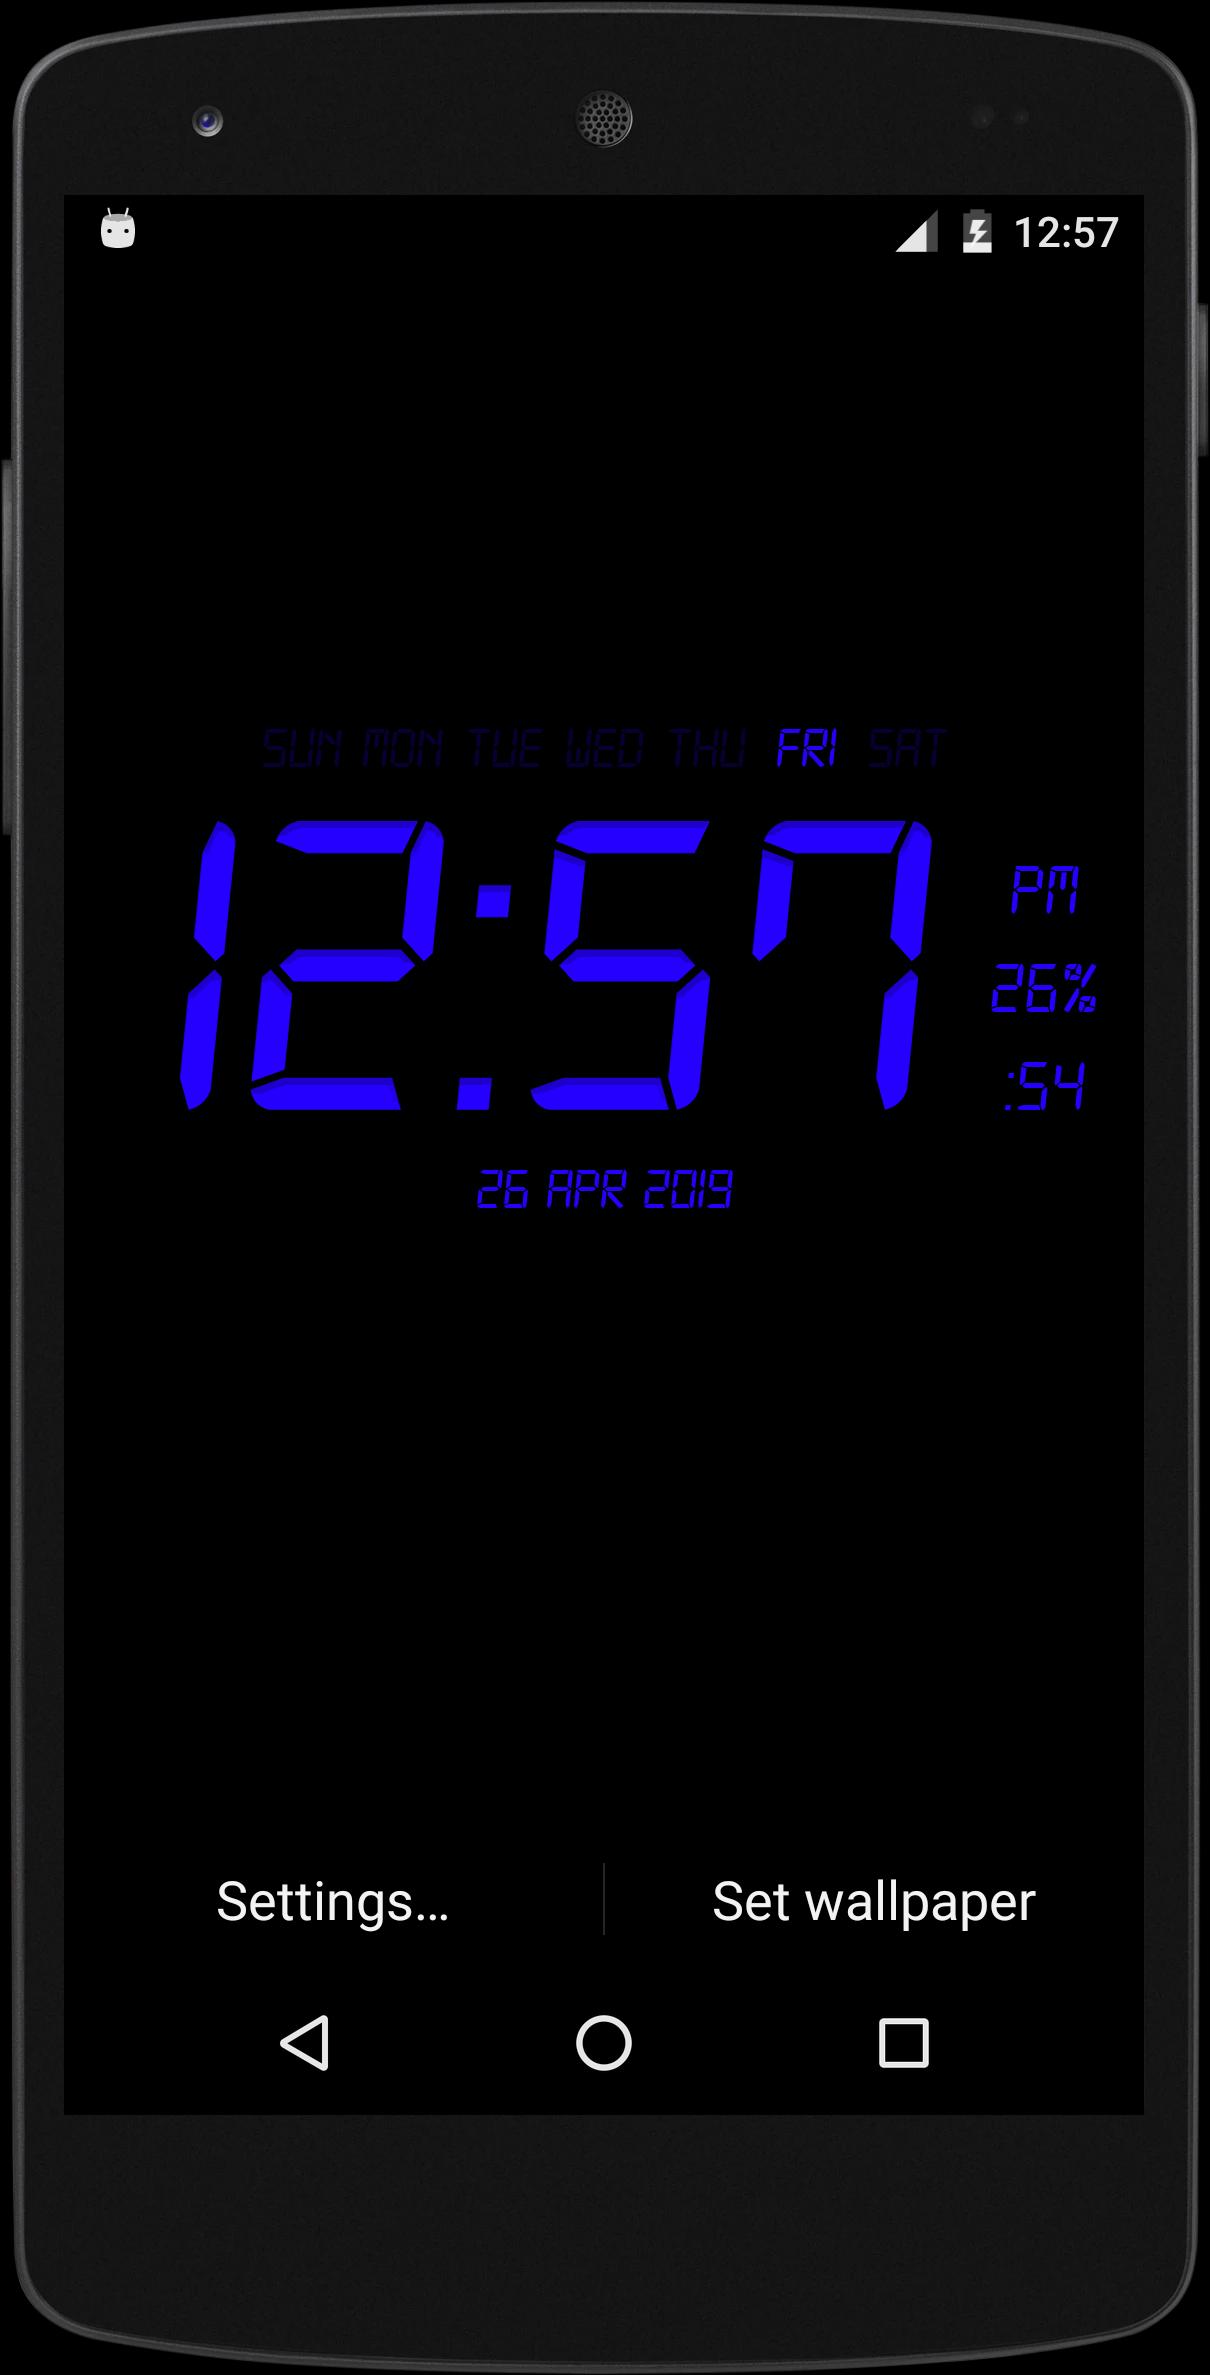 Android 用の デジタル時計ライブ壁紙 Apk をダウンロード